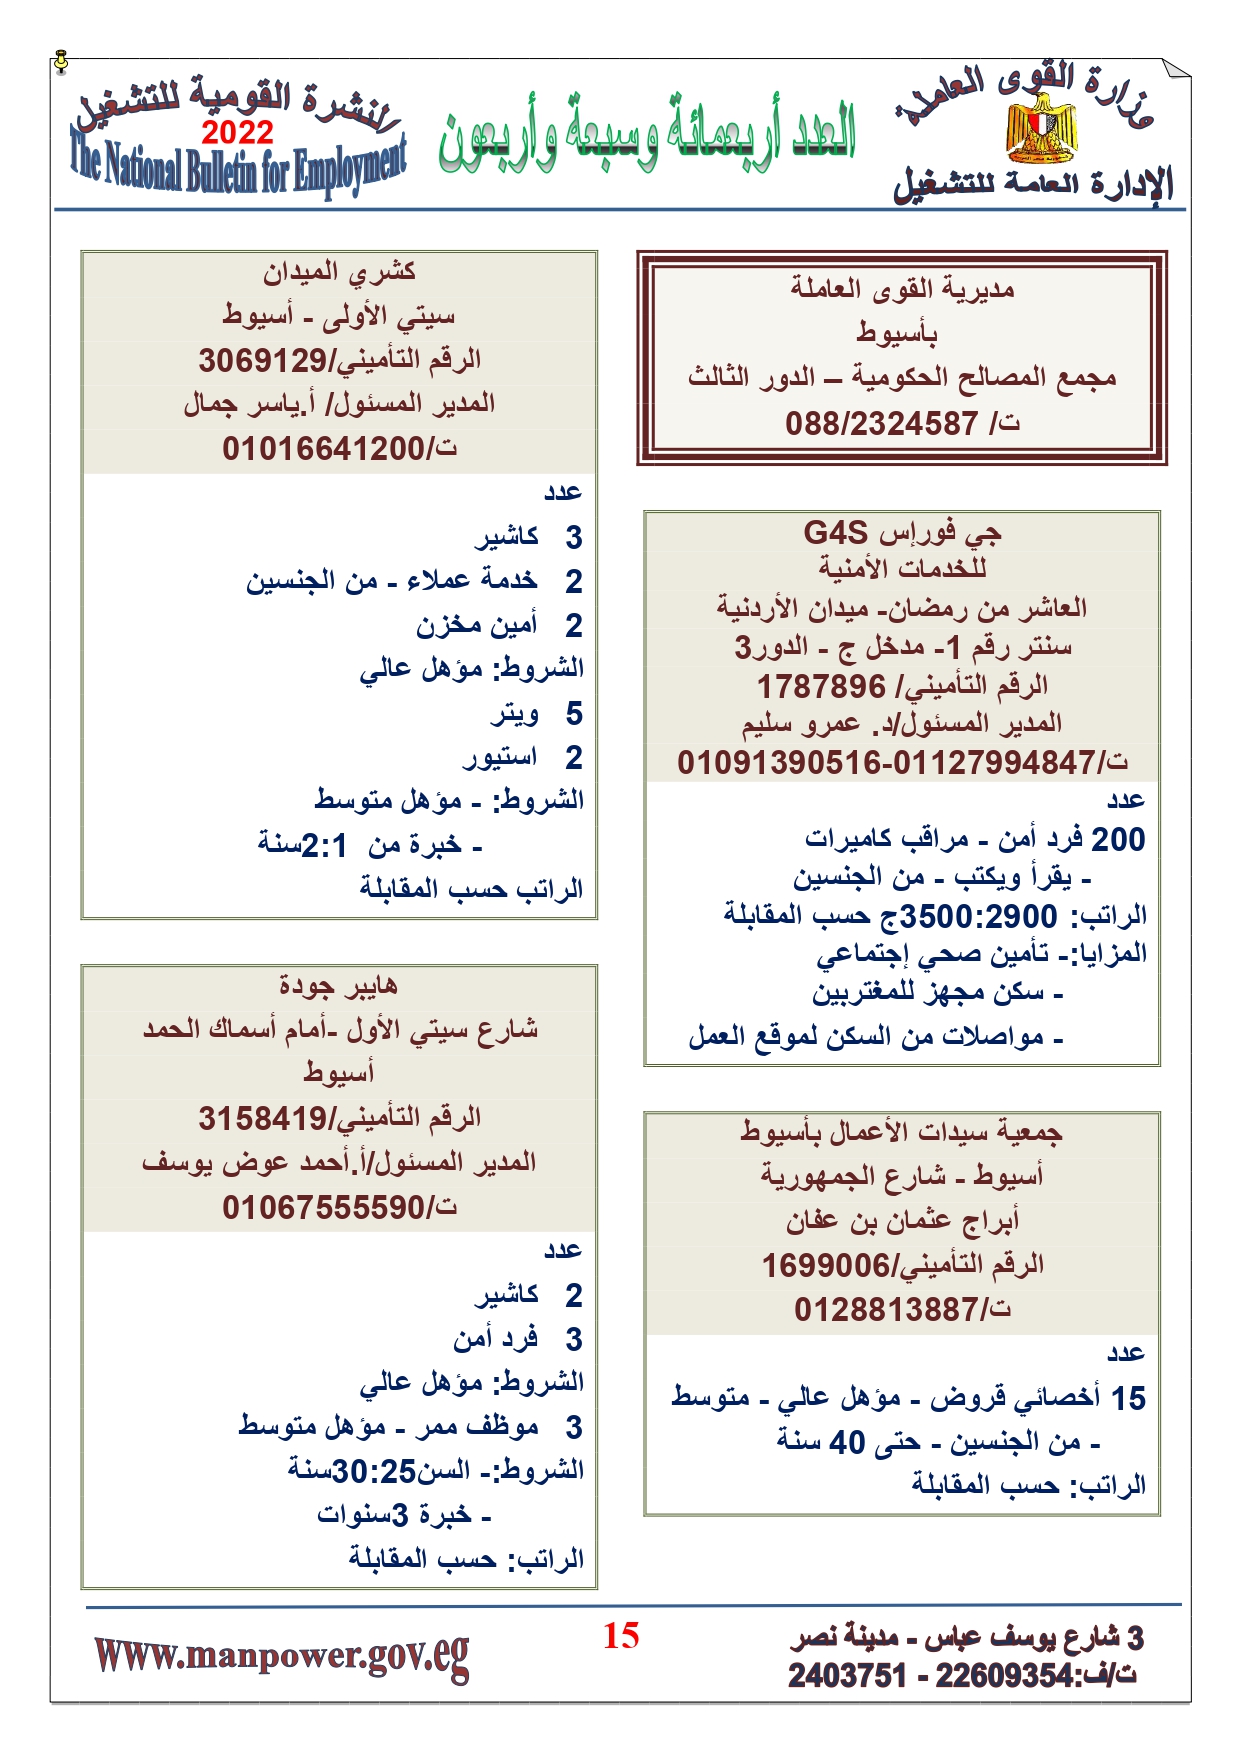 وظائف خالية بمصر وزارة القوي العاملة تعلن عن 2530 وظيفة شاغرة لجميع المؤهلات خلال فبراير ومارس 2022 11